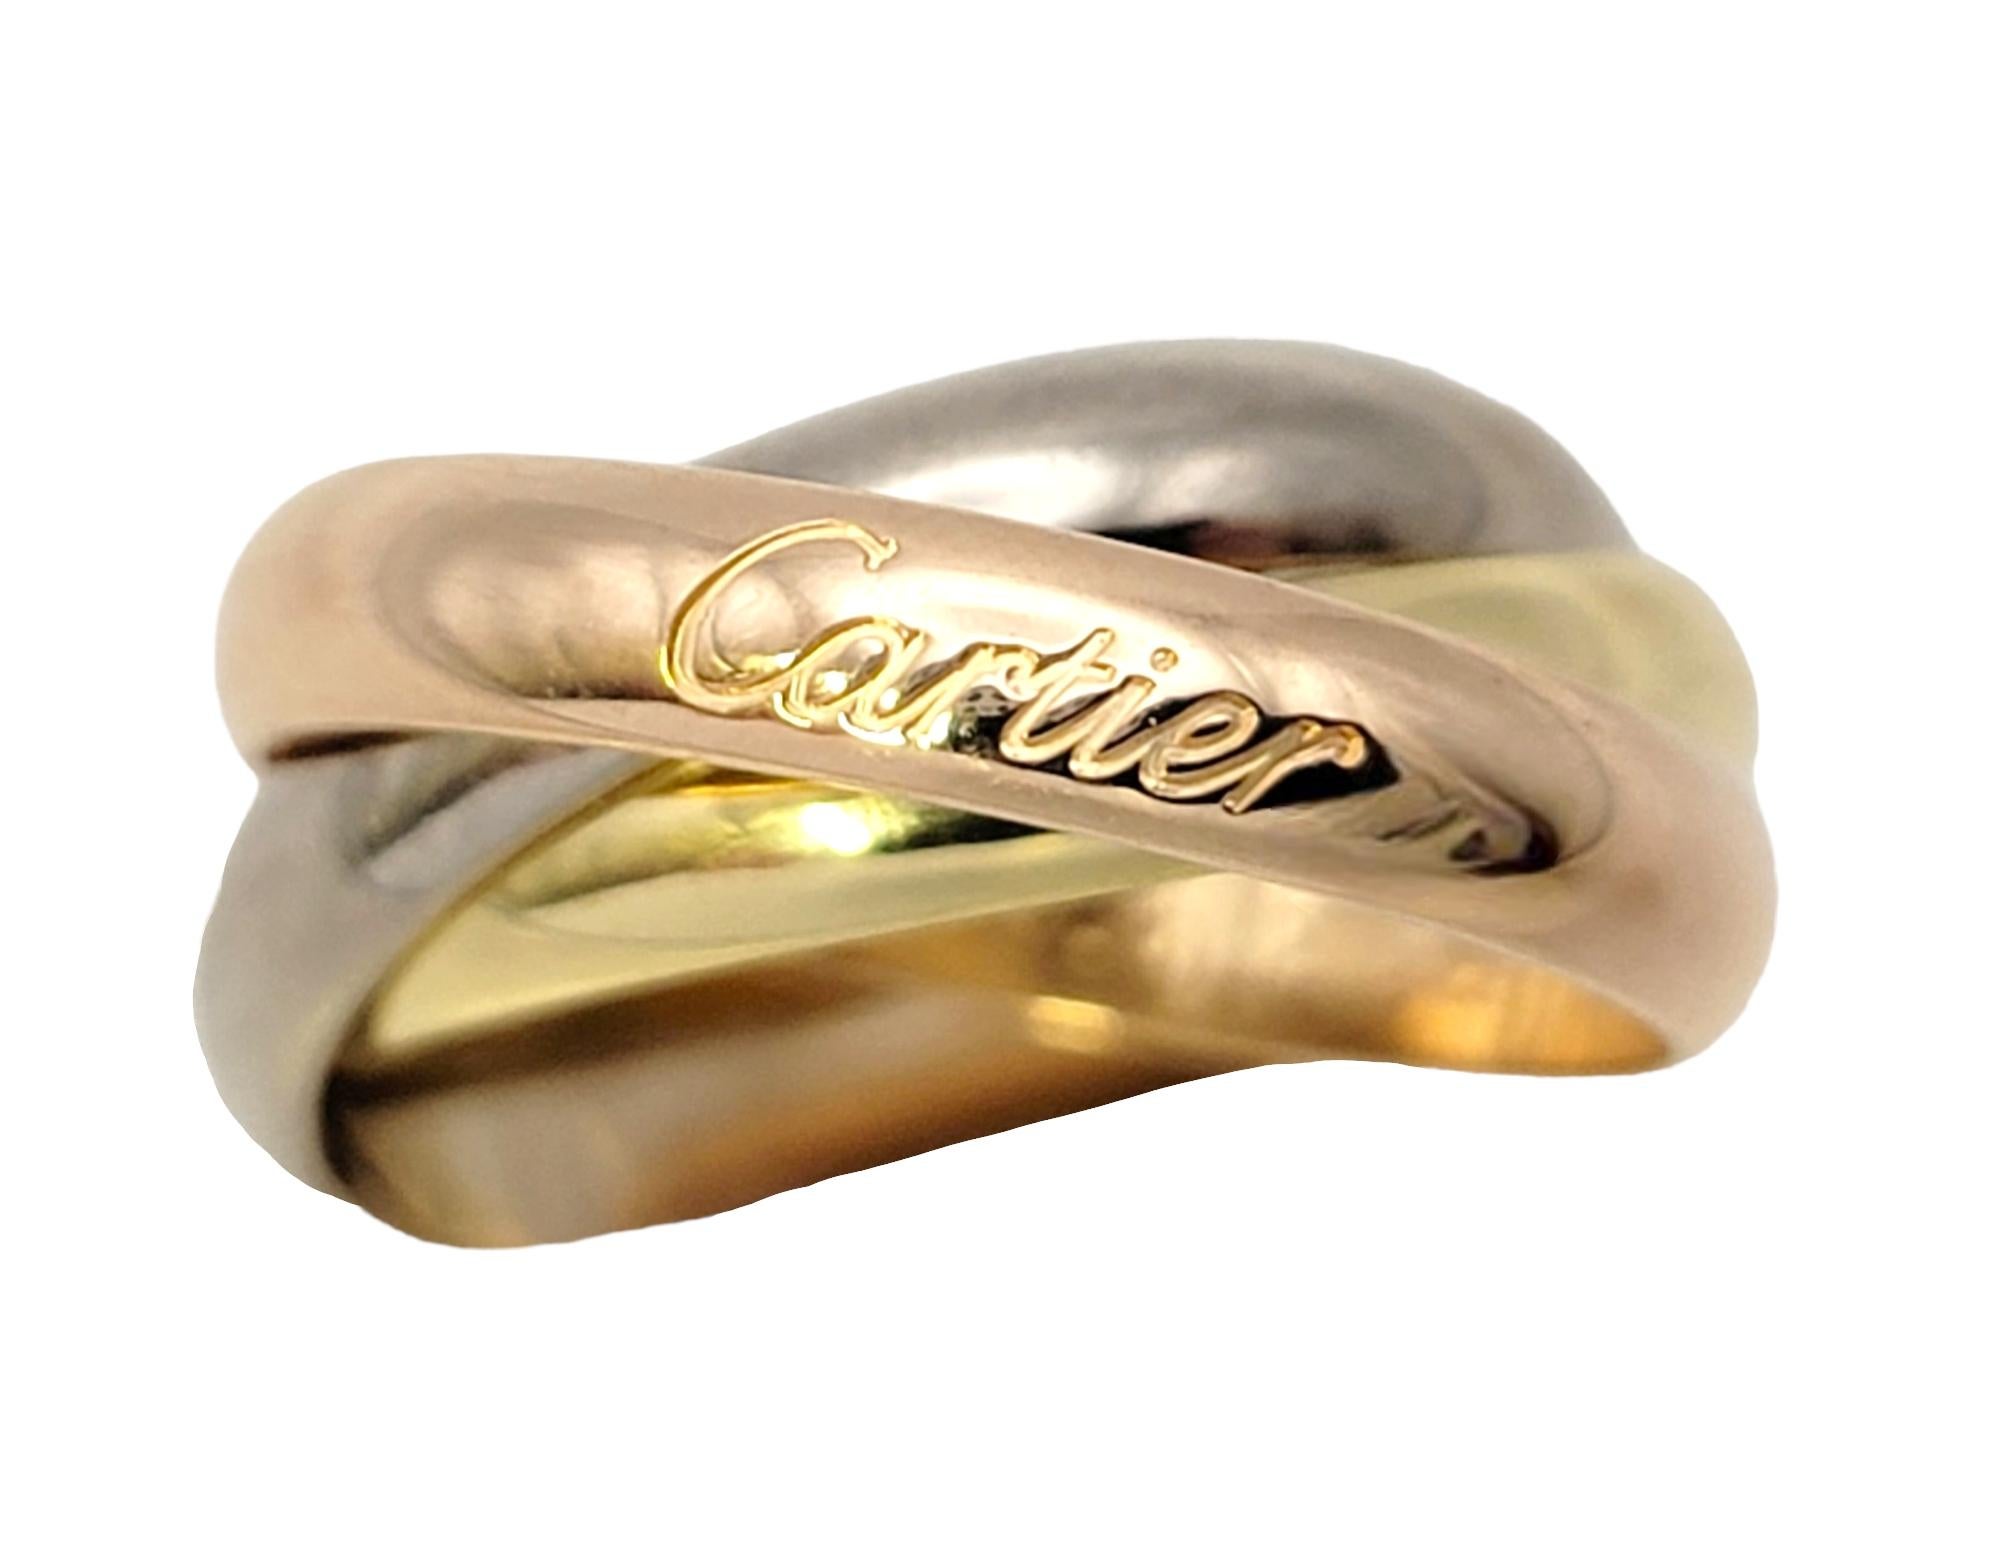 Ringgröße: 52 (US 6)

Der raffinierte dreifarbige Trinity-Ring von Cartier ist das perfekte Alltagsstück. Cartier ist ein französisches Luxusgüterunternehmen, das Schmuck, Lederwaren und Uhren entwirft, herstellt, vertreibt und verkauft. Sie wurde